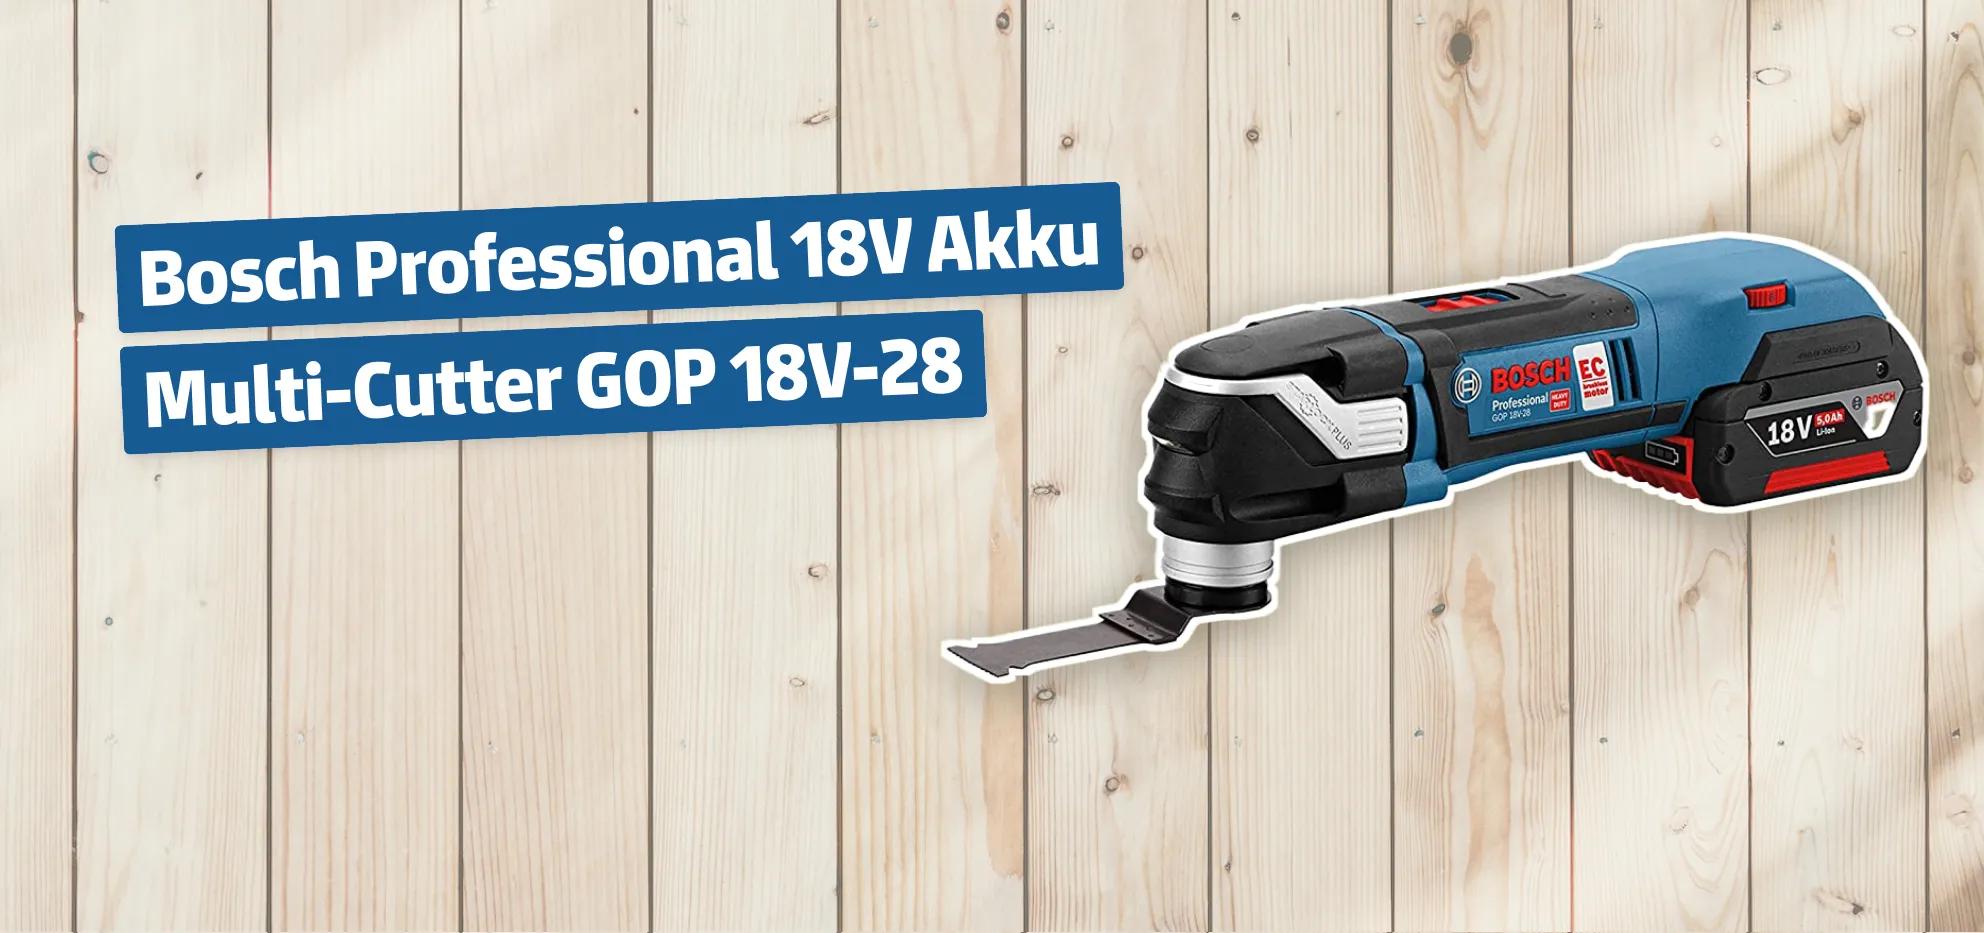 Bosch Professional 18V Akku Multi-Cutter GOP 18V-28